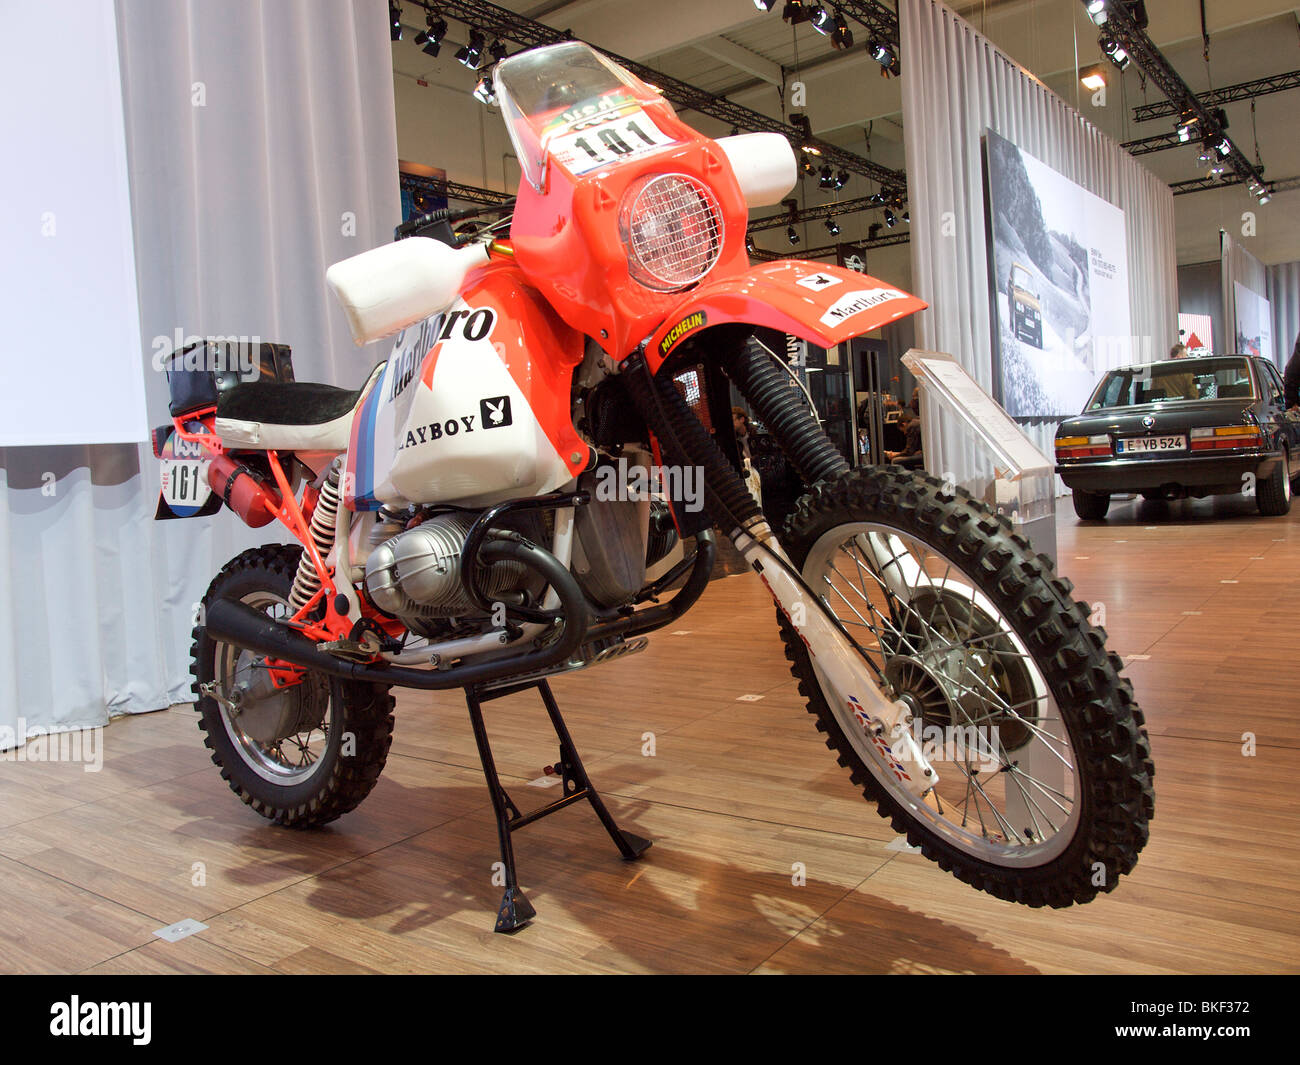 La BMW R80GS moto usata da Gaston Rahier nel 1985 Parigi Dakar rallye Foto Stock